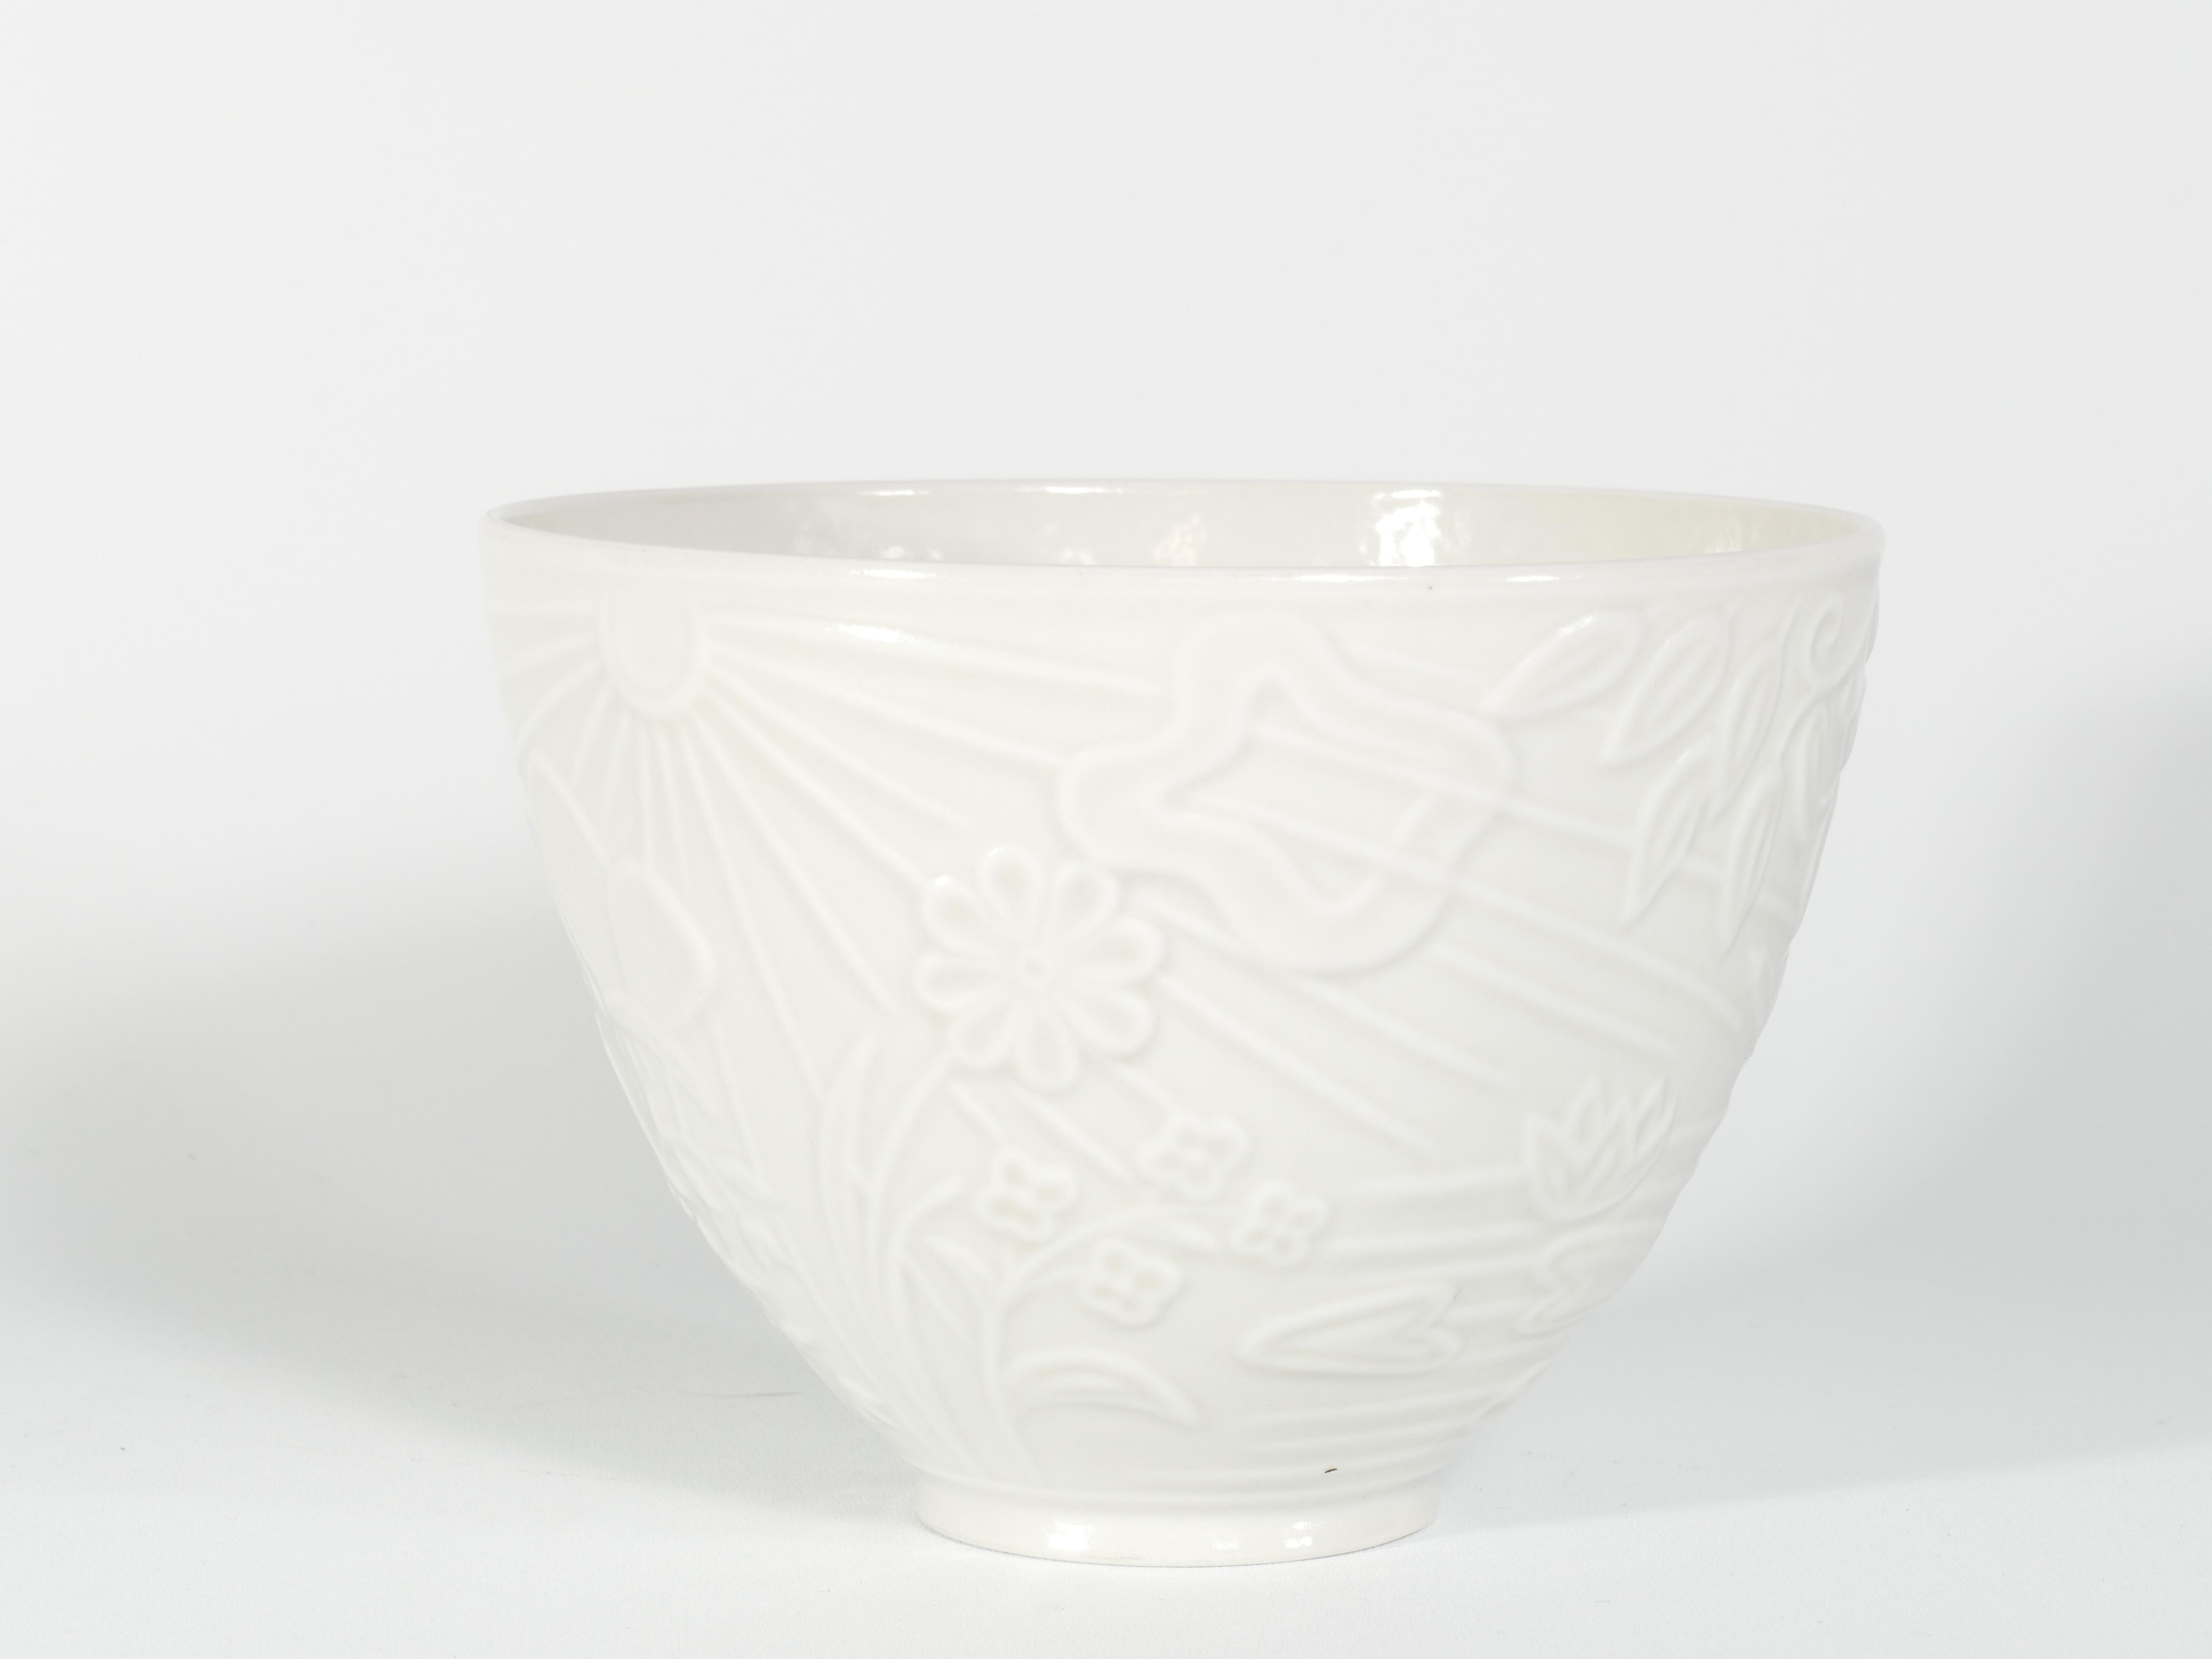 Il s'agit d'une coupe fine, très rare, en porcelaine blanche translucide, conçue par Gunnar Nylund pour ALP Lidköping/Rörstrand. La coupe présente un joli décor en relief représentant le soleil, des nuages, de l'eau avec des nénuphars et des